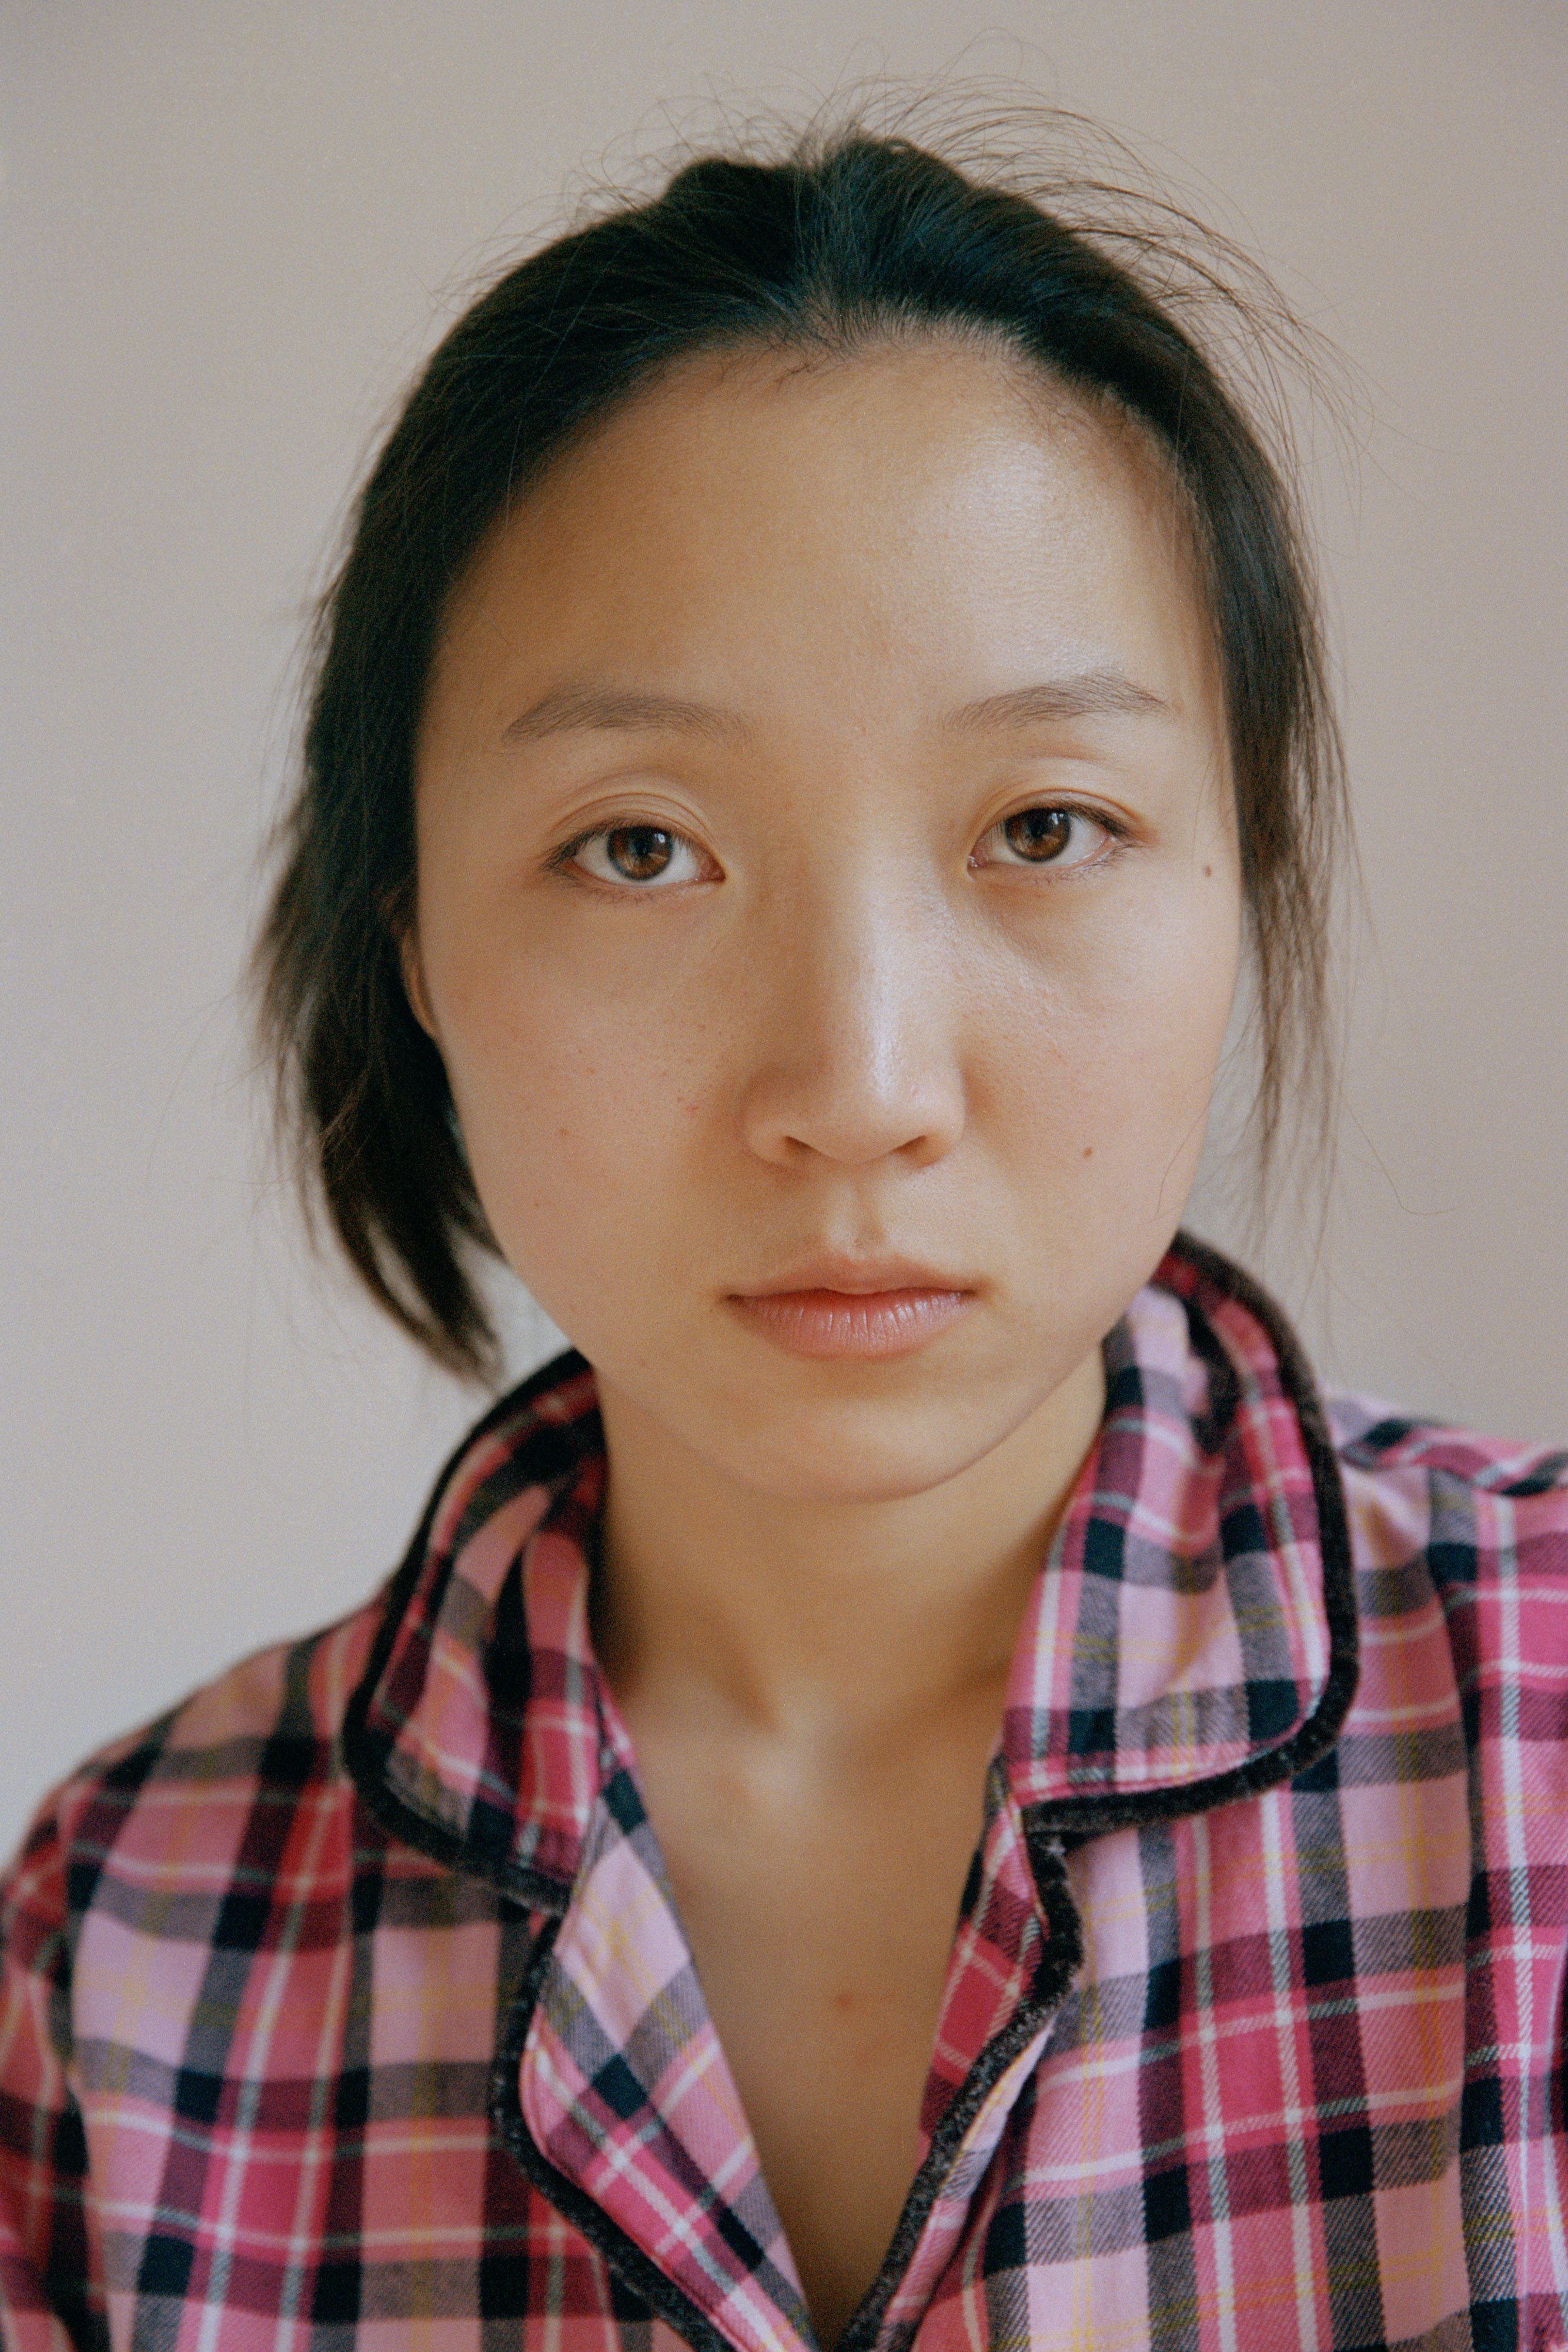 La maternité vue par Alex Huanfa Cheng, lauréat de la Bourse du talent